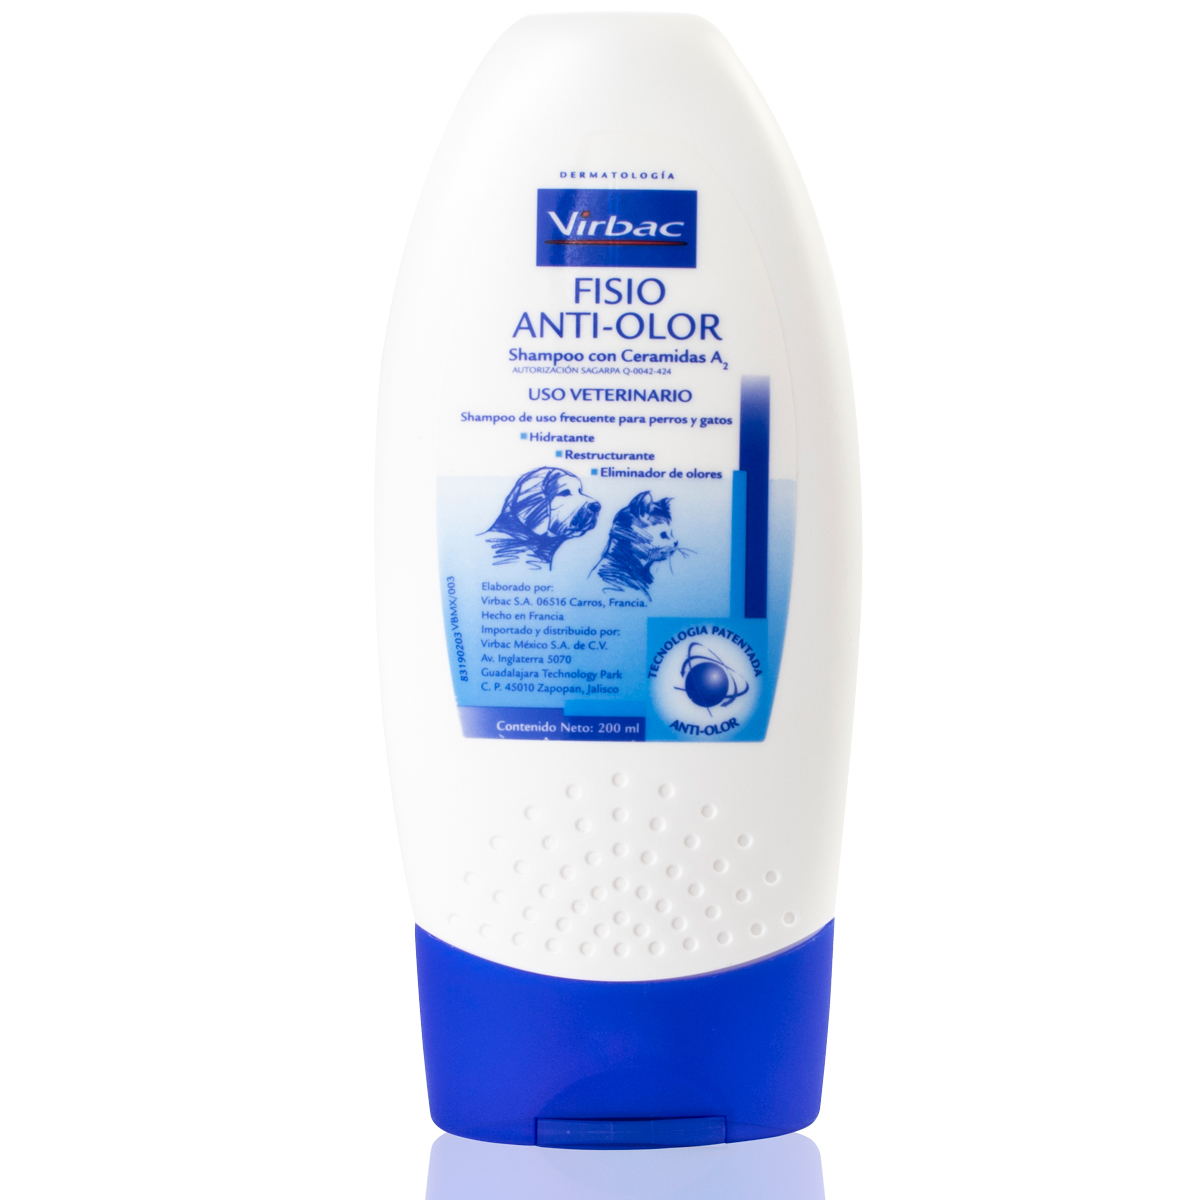 Virbac Fisio Anti-Olor Shampoo con Ceramidas A2 para Perro y Gato, 200 ml